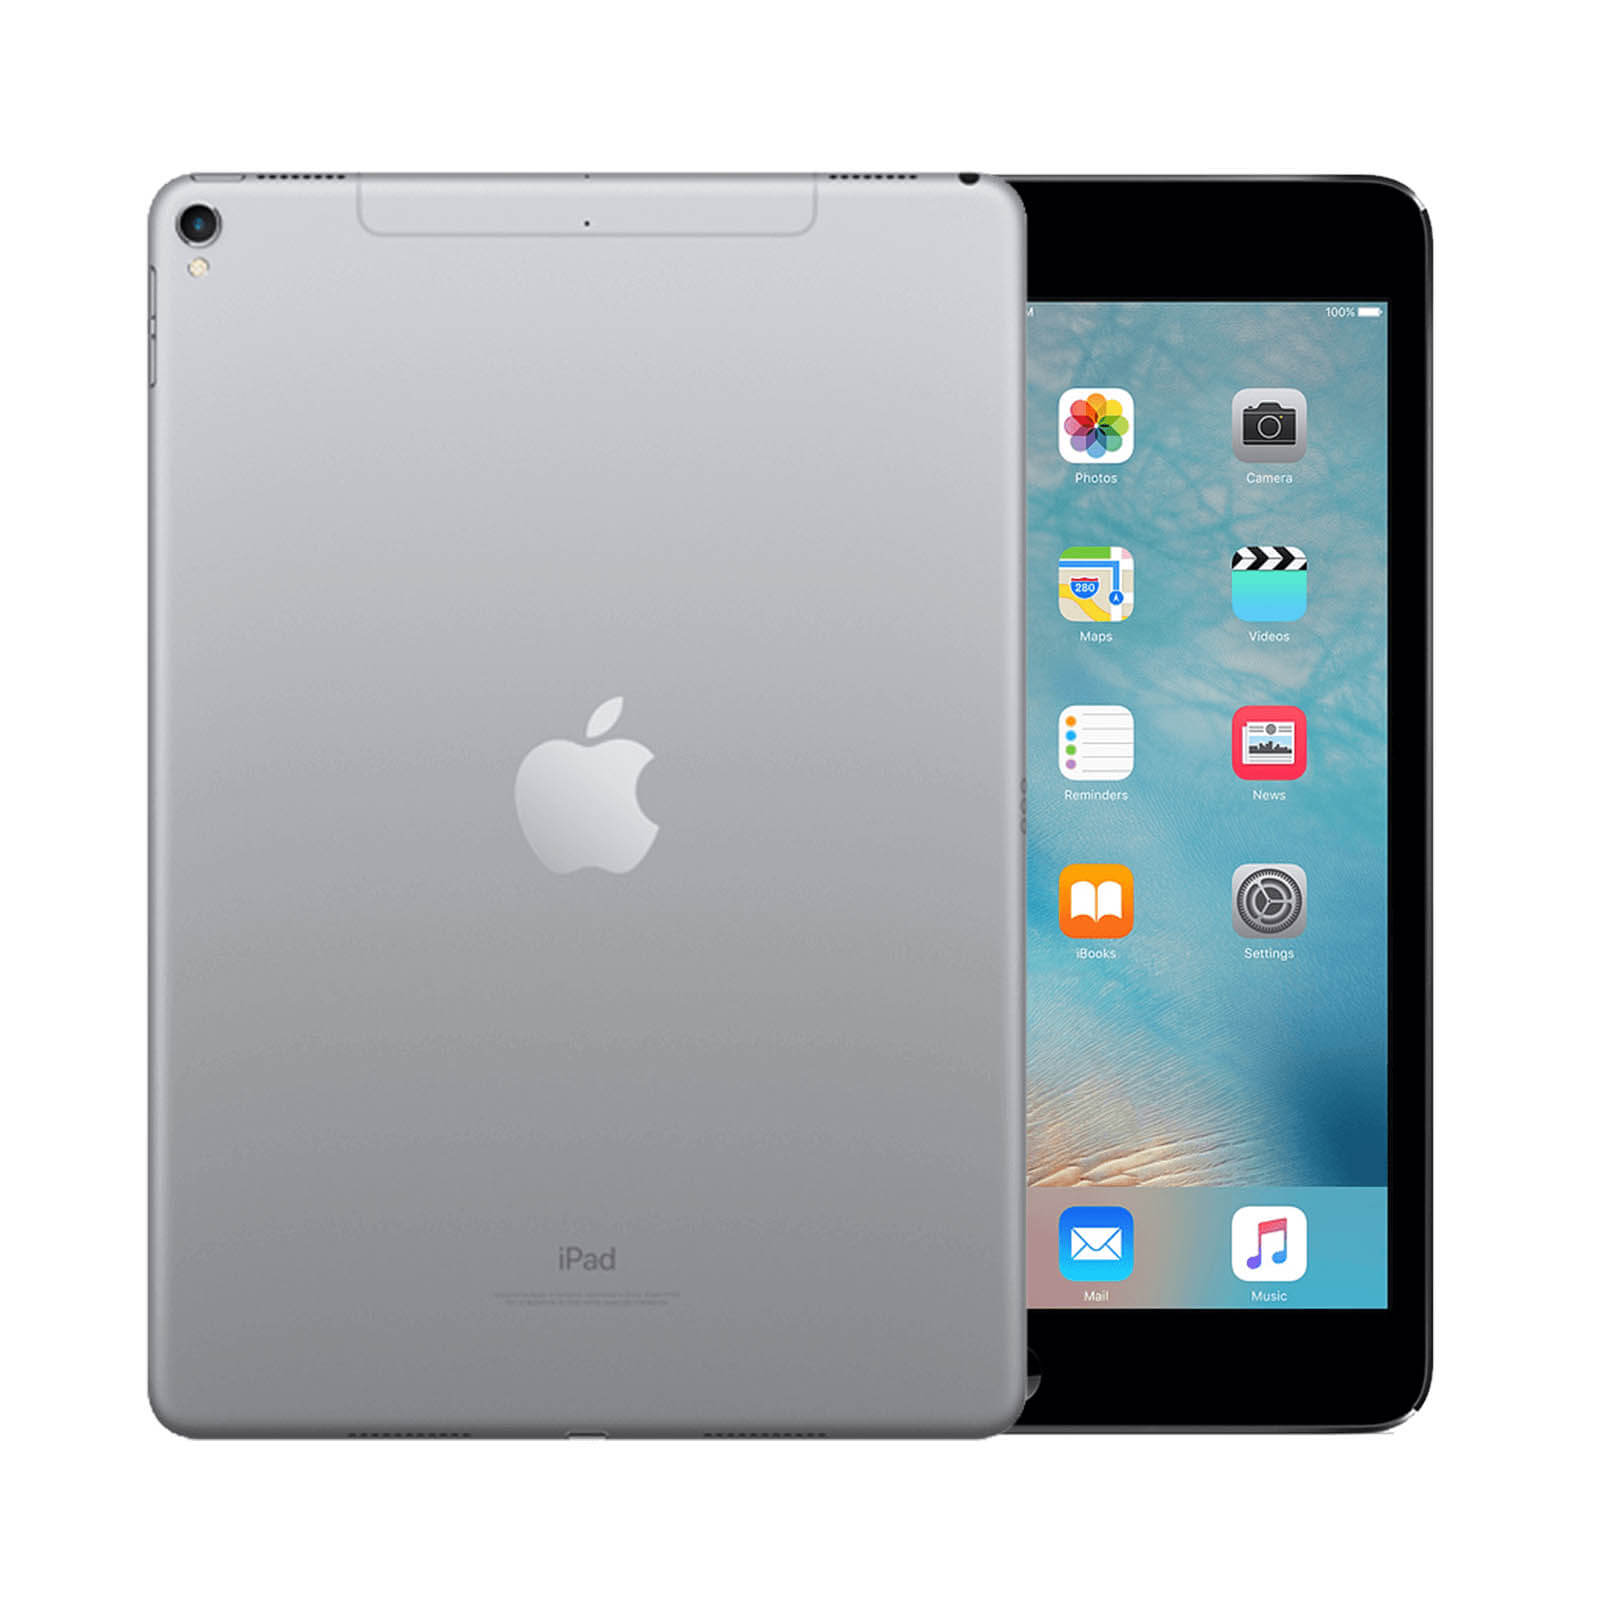 Apple iPad 32GB Ohne Vertrag - Space Grau - Sehr Gut